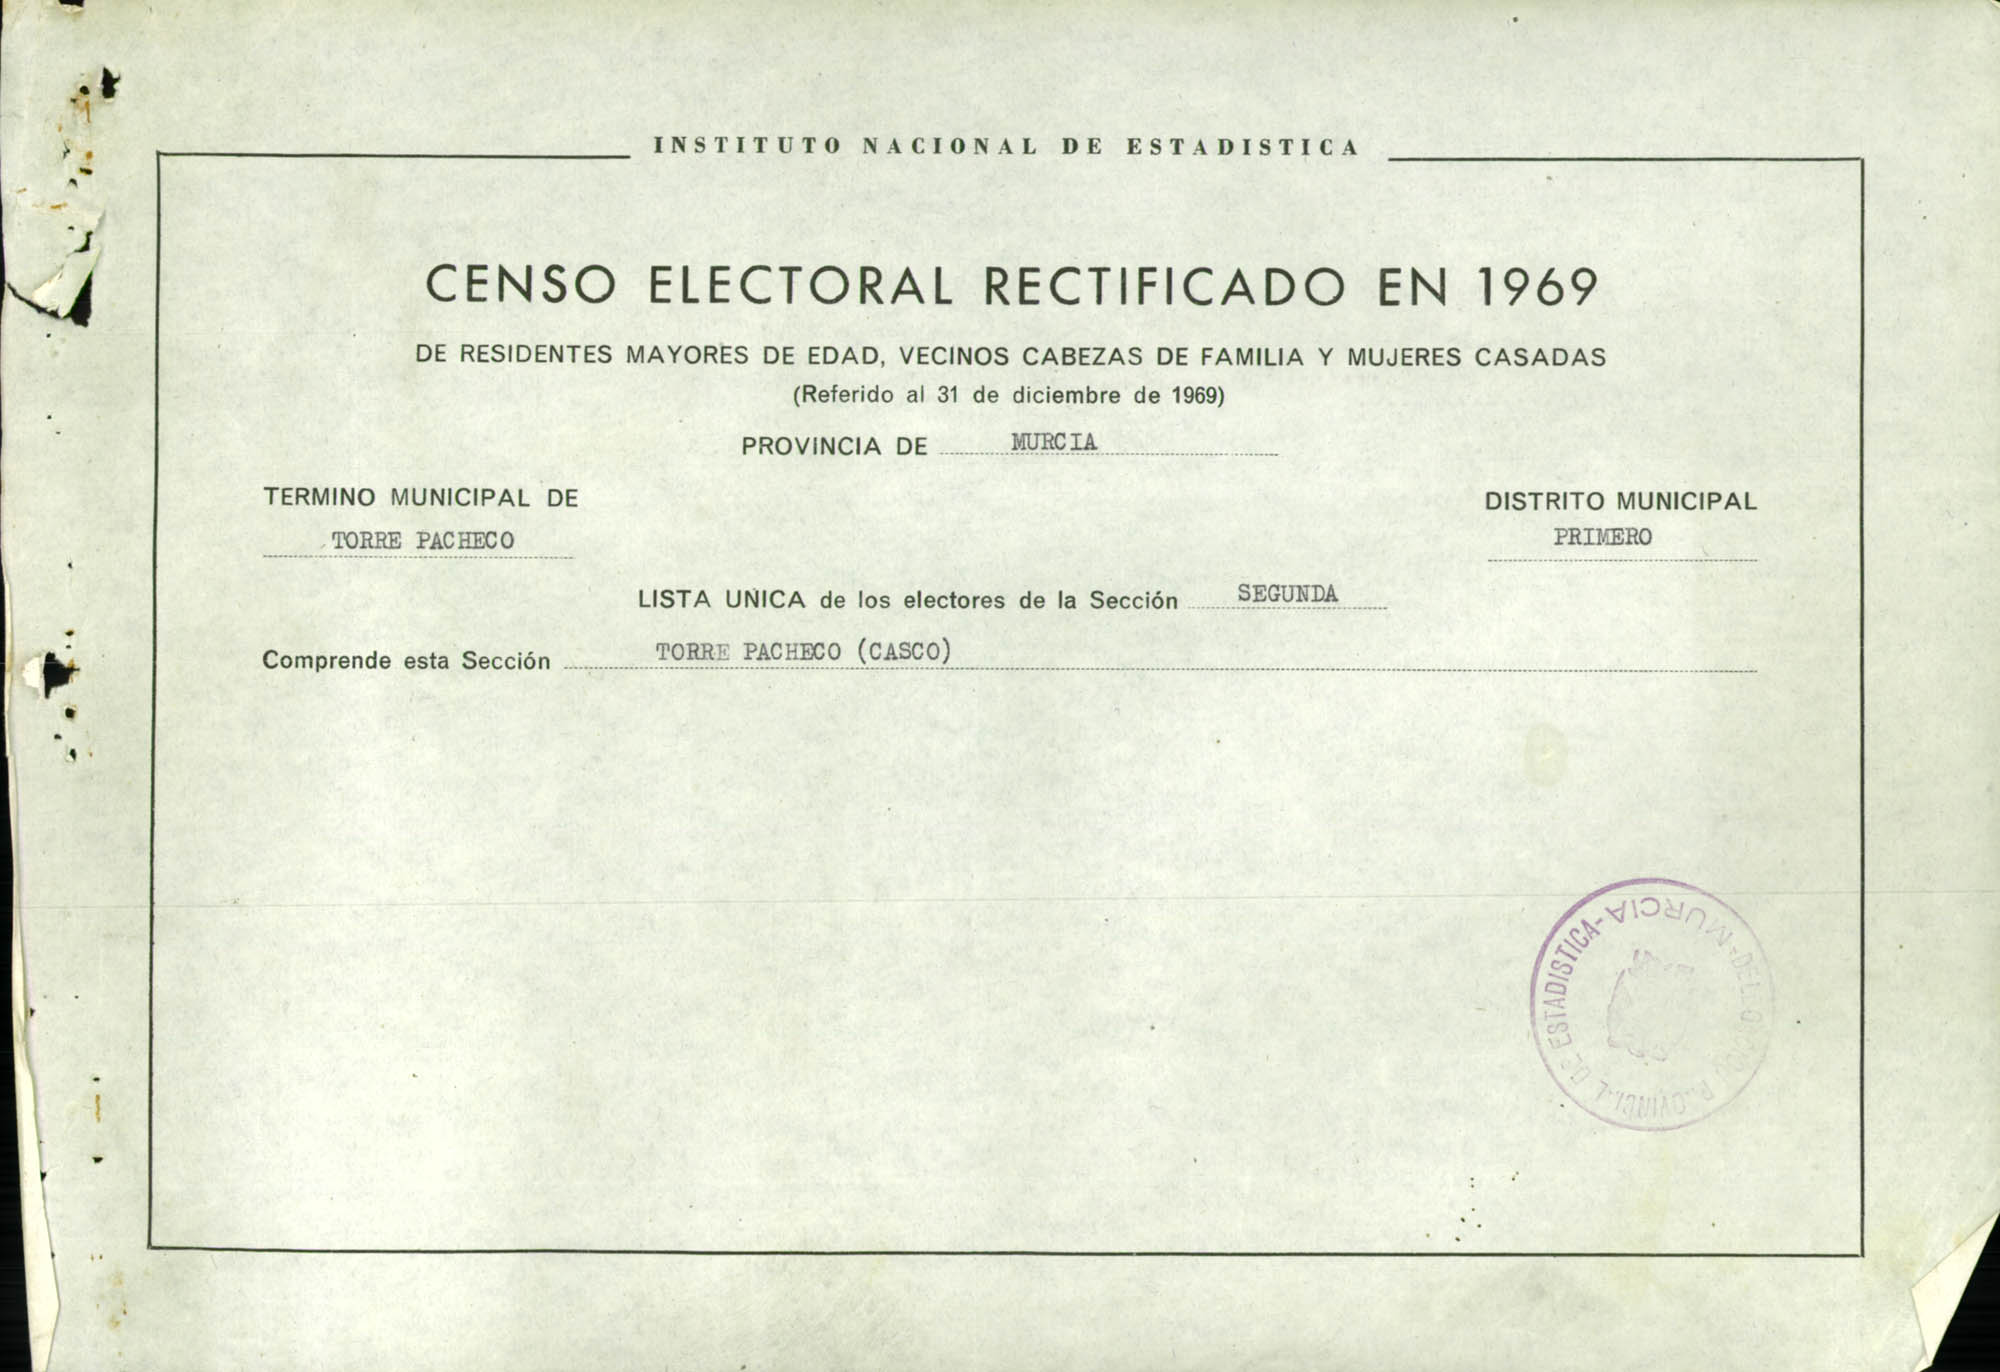 Censo electoral rectificado en 1969: listas definitivas de Torre Pacheco, Distrito 1º, sección 2ª.